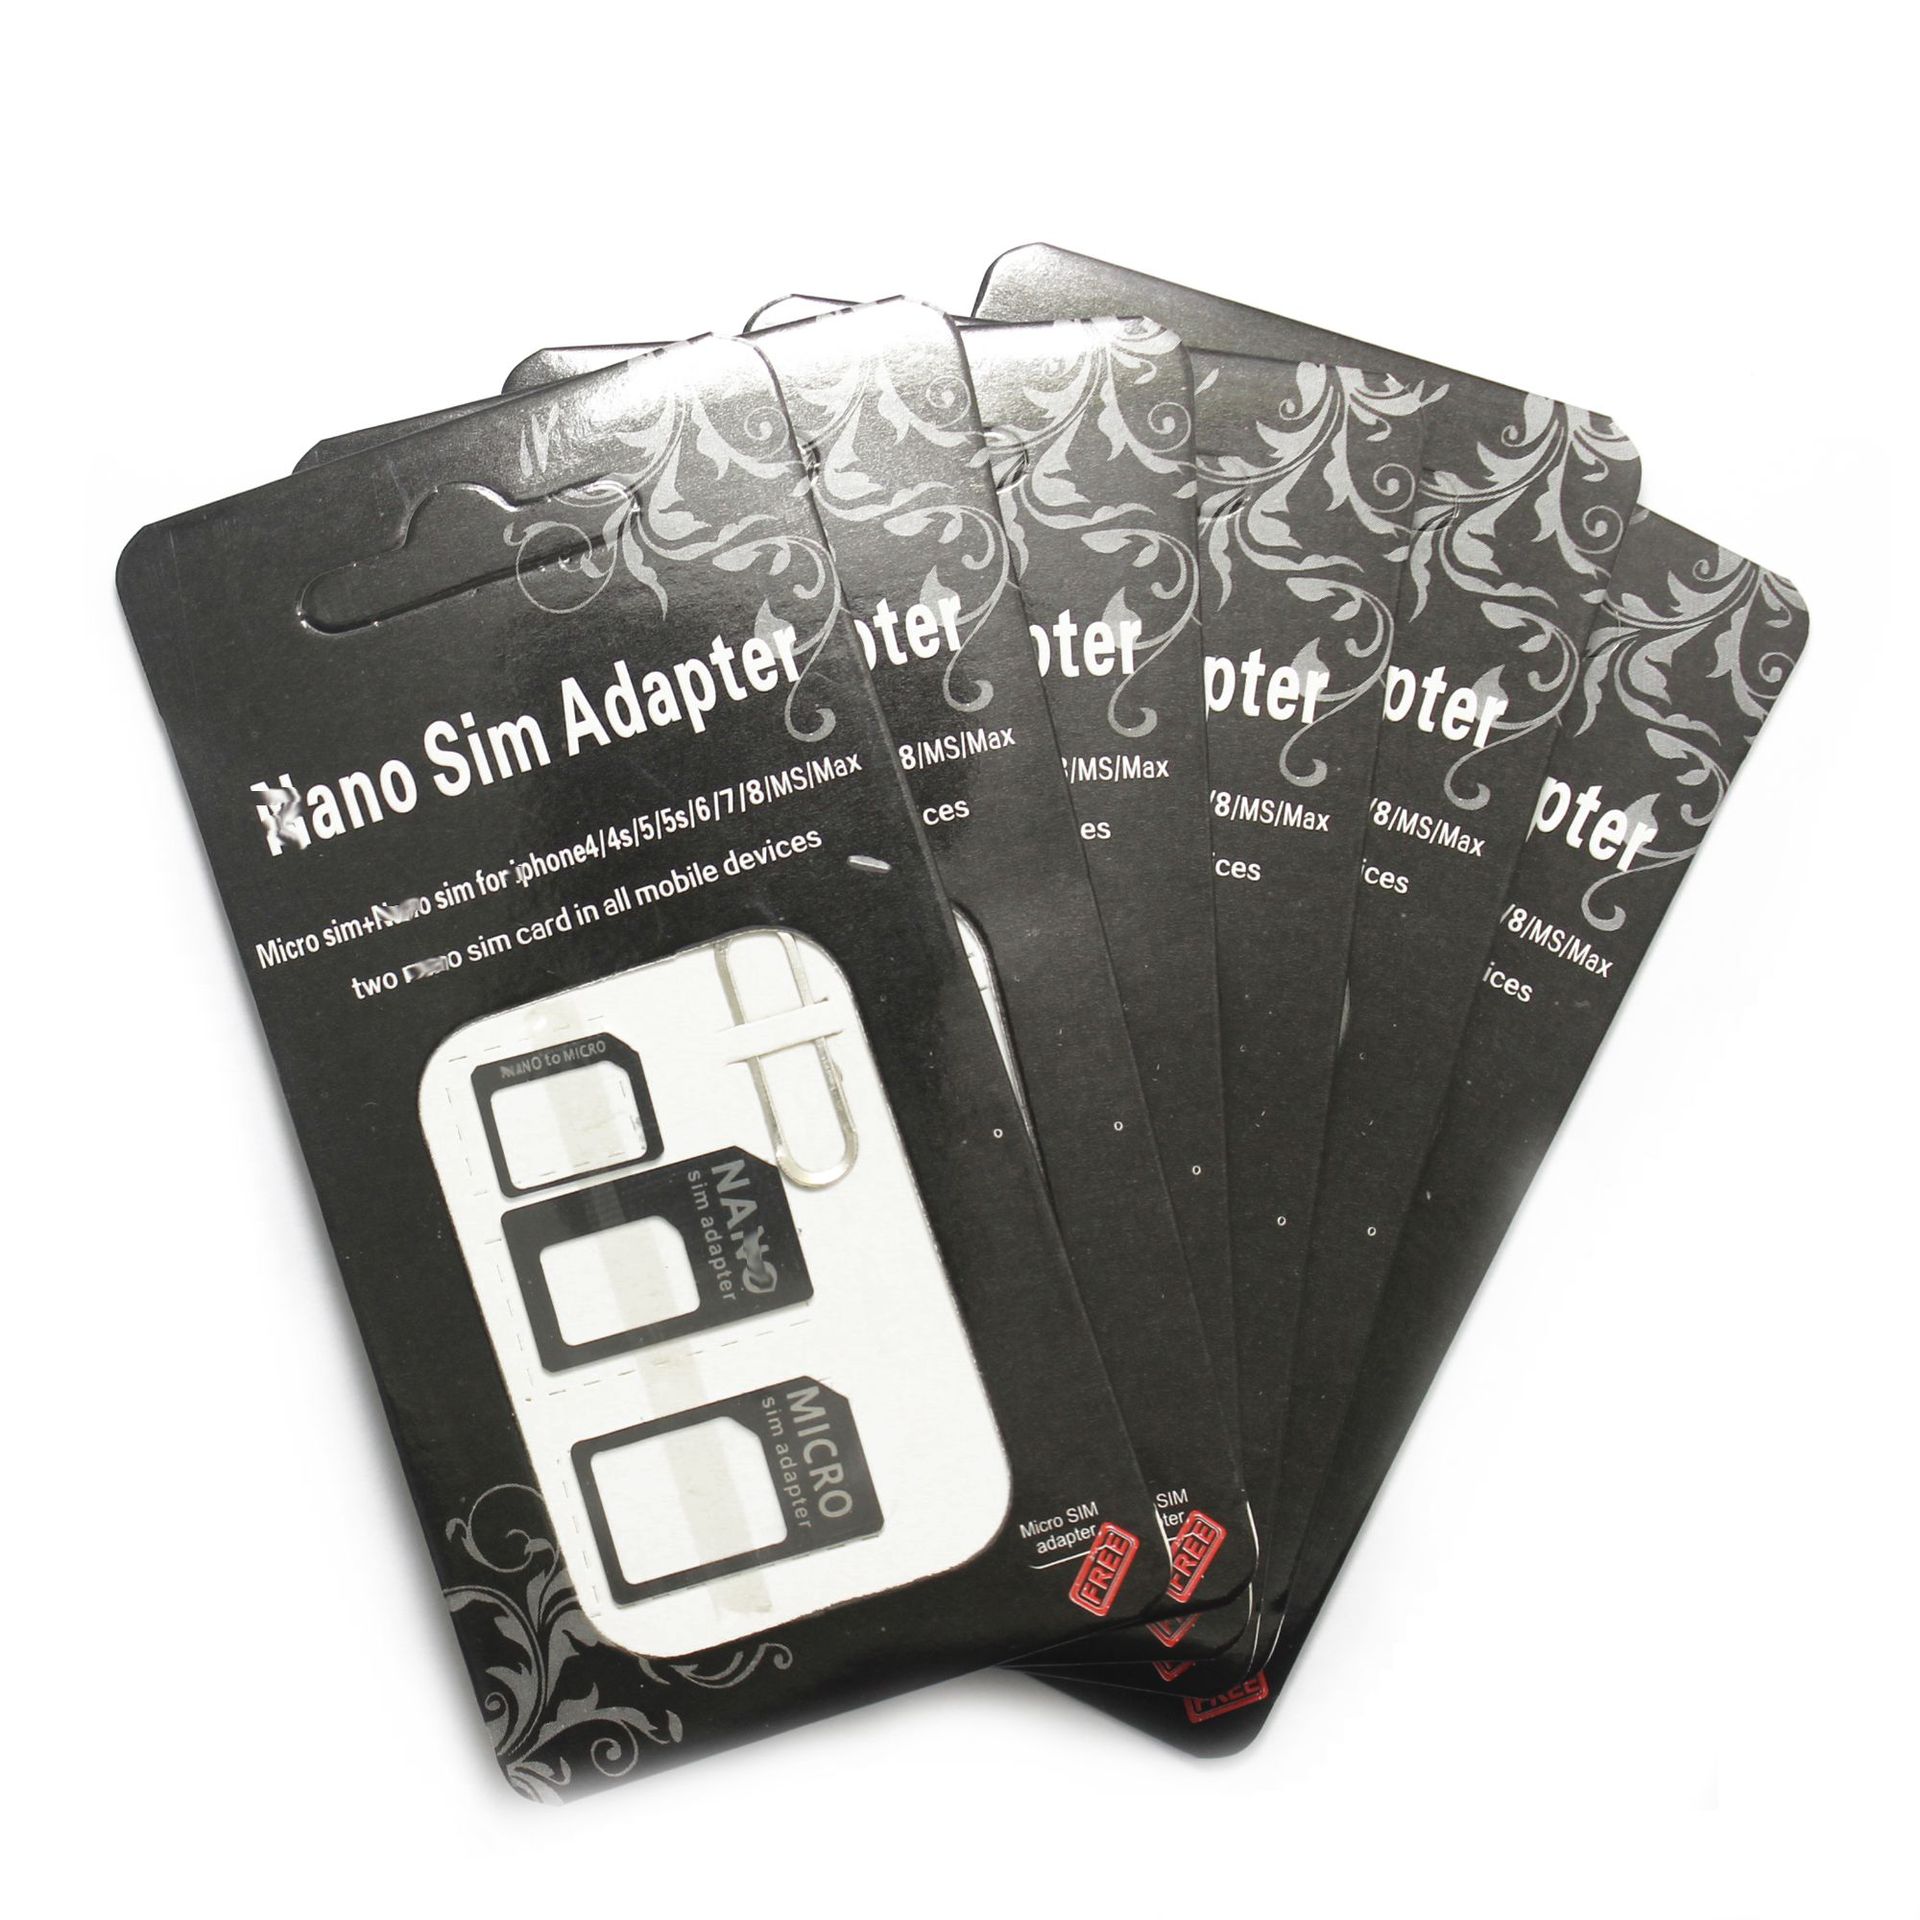 4 i 1 Nano Micro SIM -korttillbehör Adapter EJKT PIN FÖR IPHONE 5 för iPhone 4 4S 6 Samsung S4 S3 Retail Box